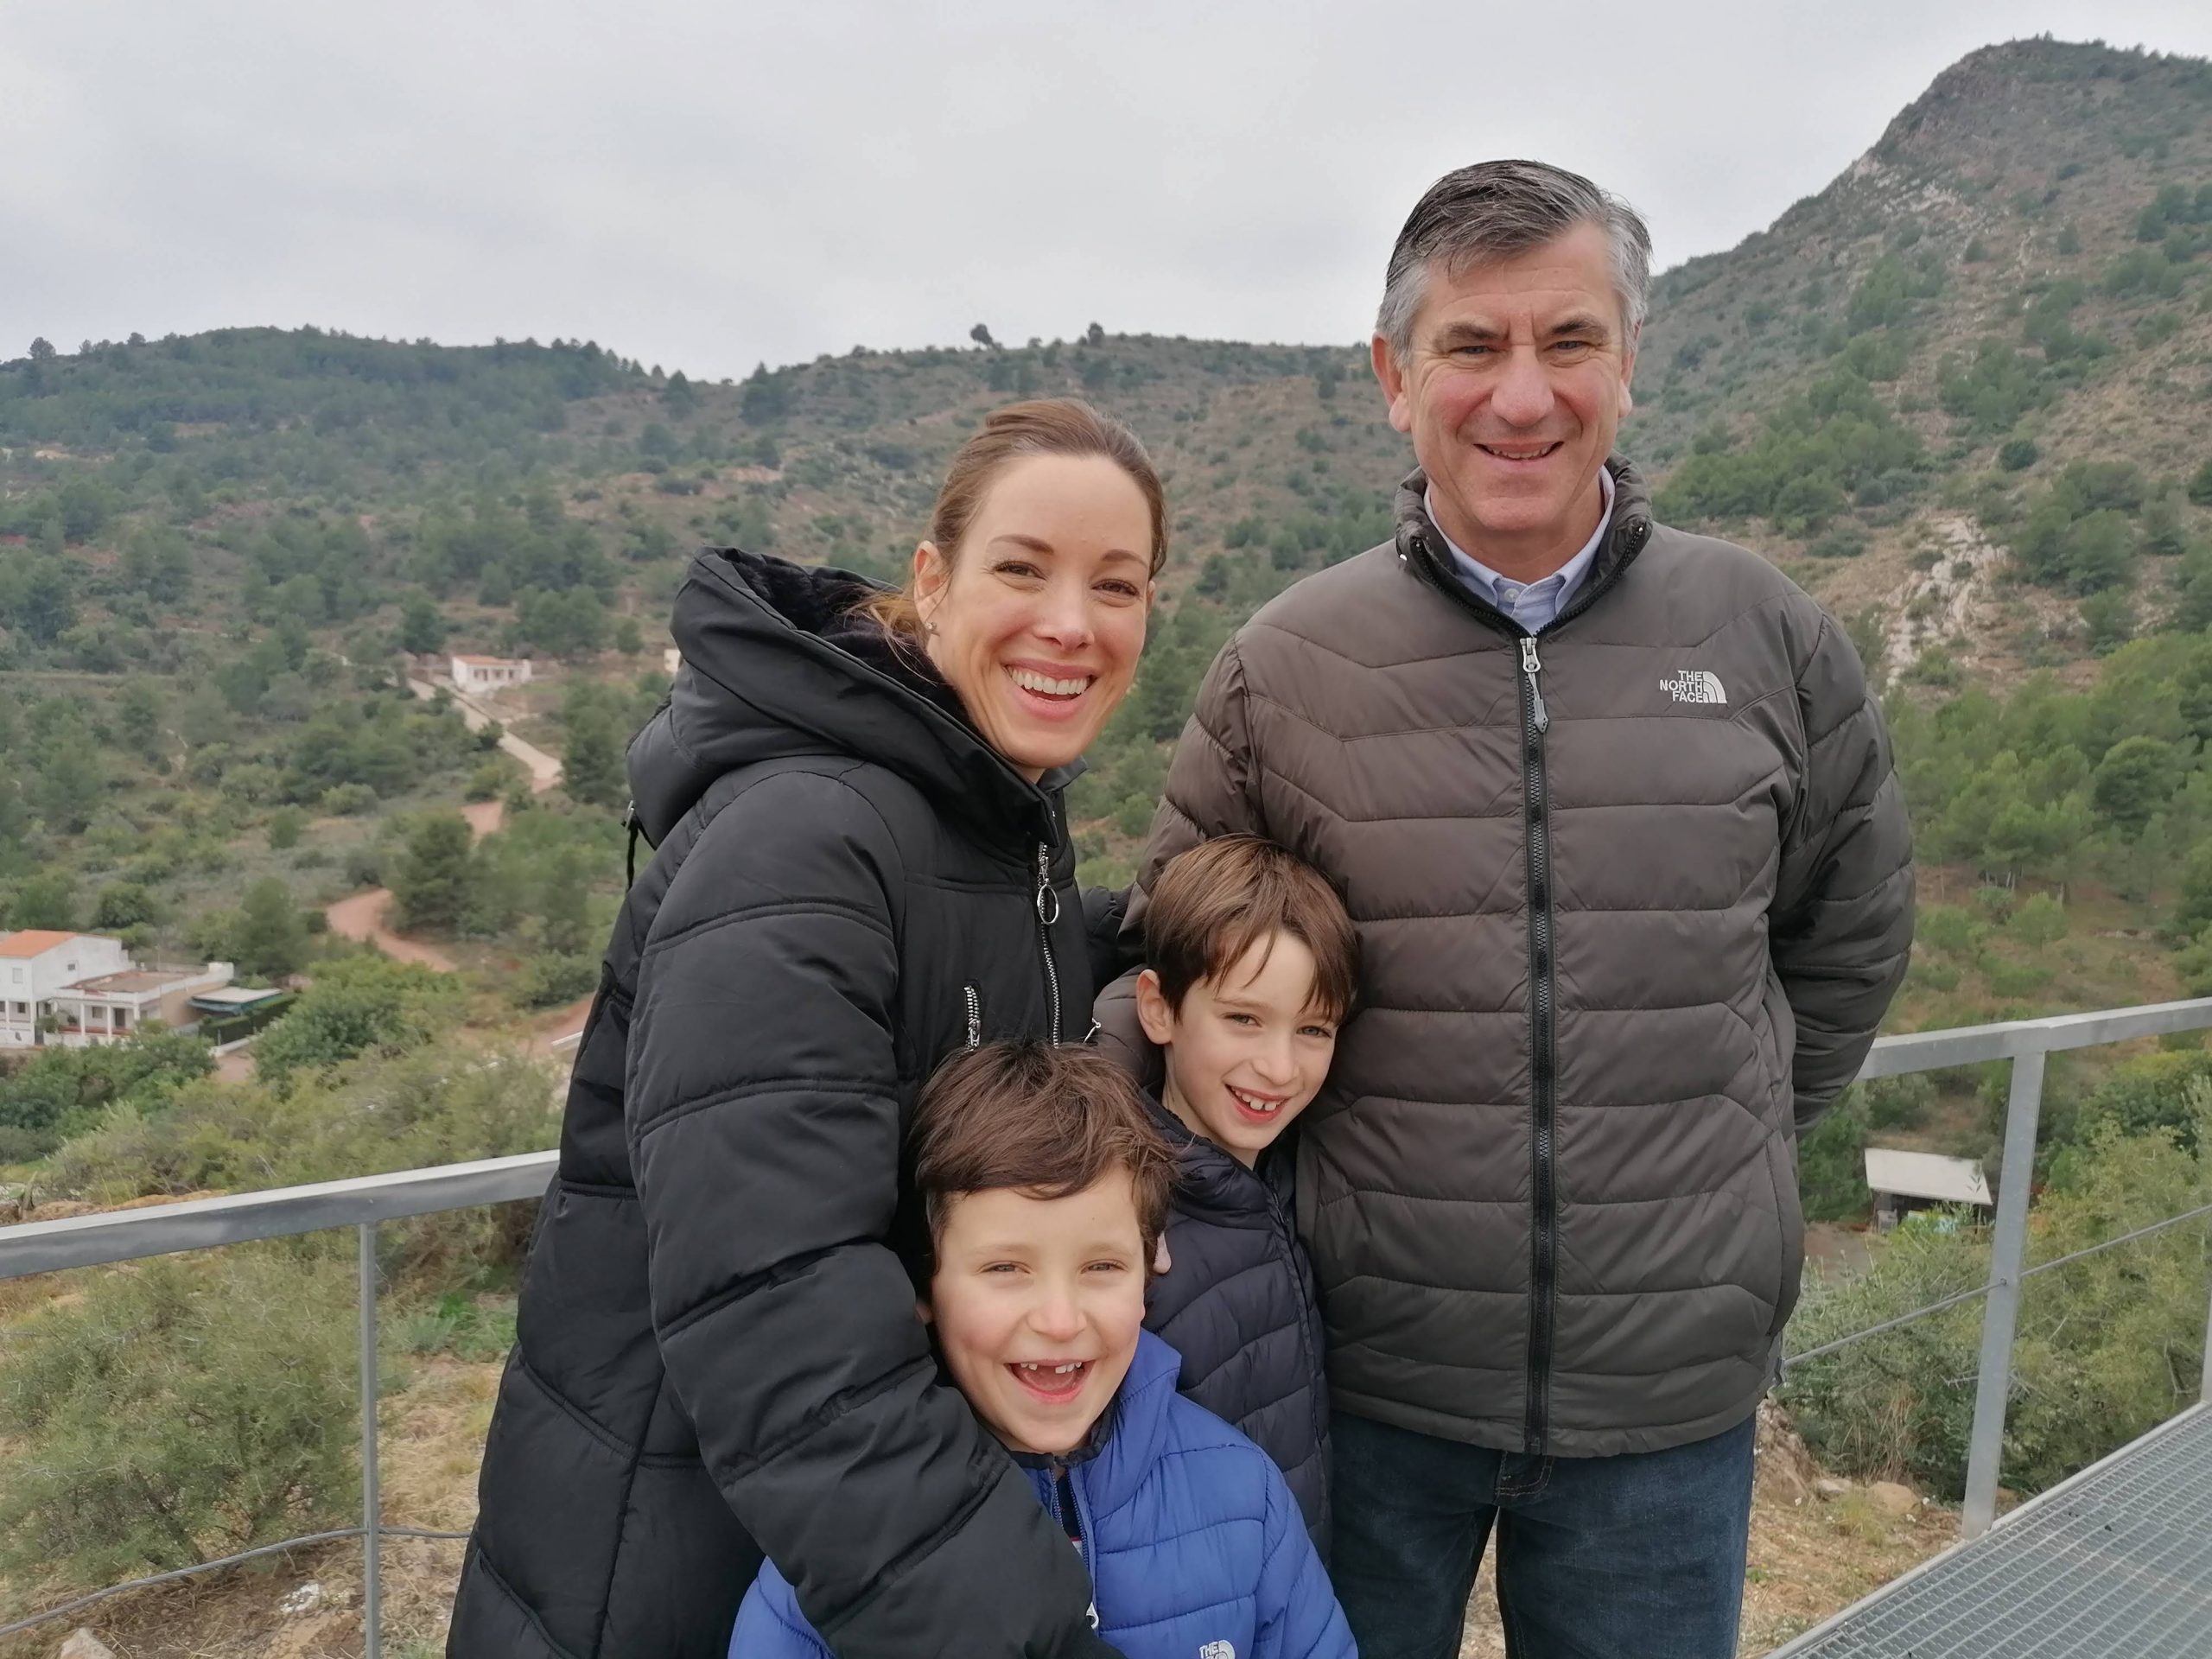 Valencia family tour experiences